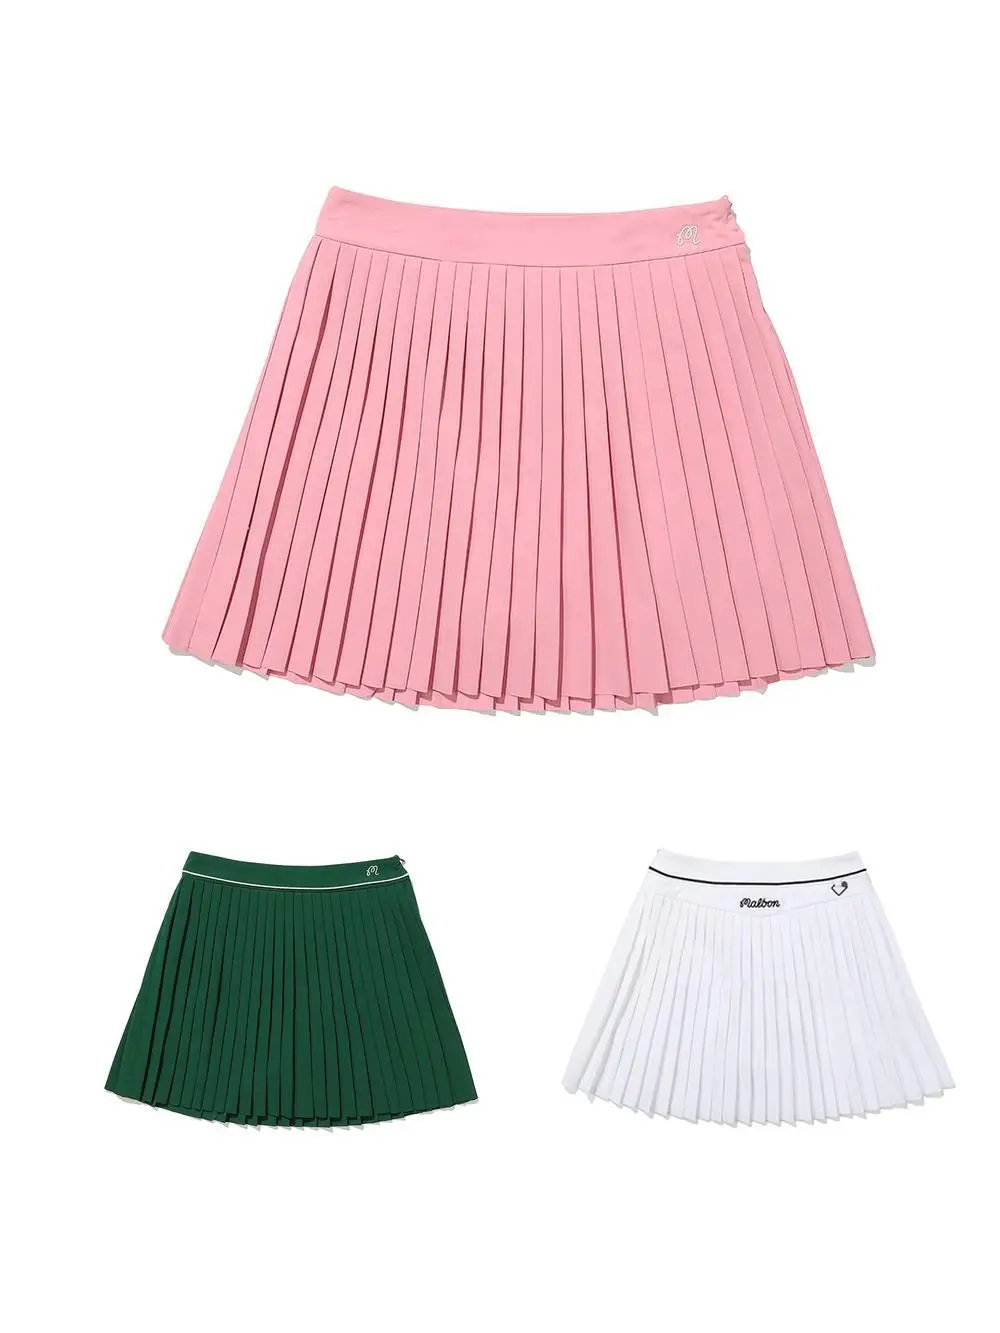 

Лето 2023, Южная Корея, MALBON, Женская юбка для гольфа, все в одном, однотонная плиссированная юбка, Спортивная, с высокой талией, с защитой от экспозиции